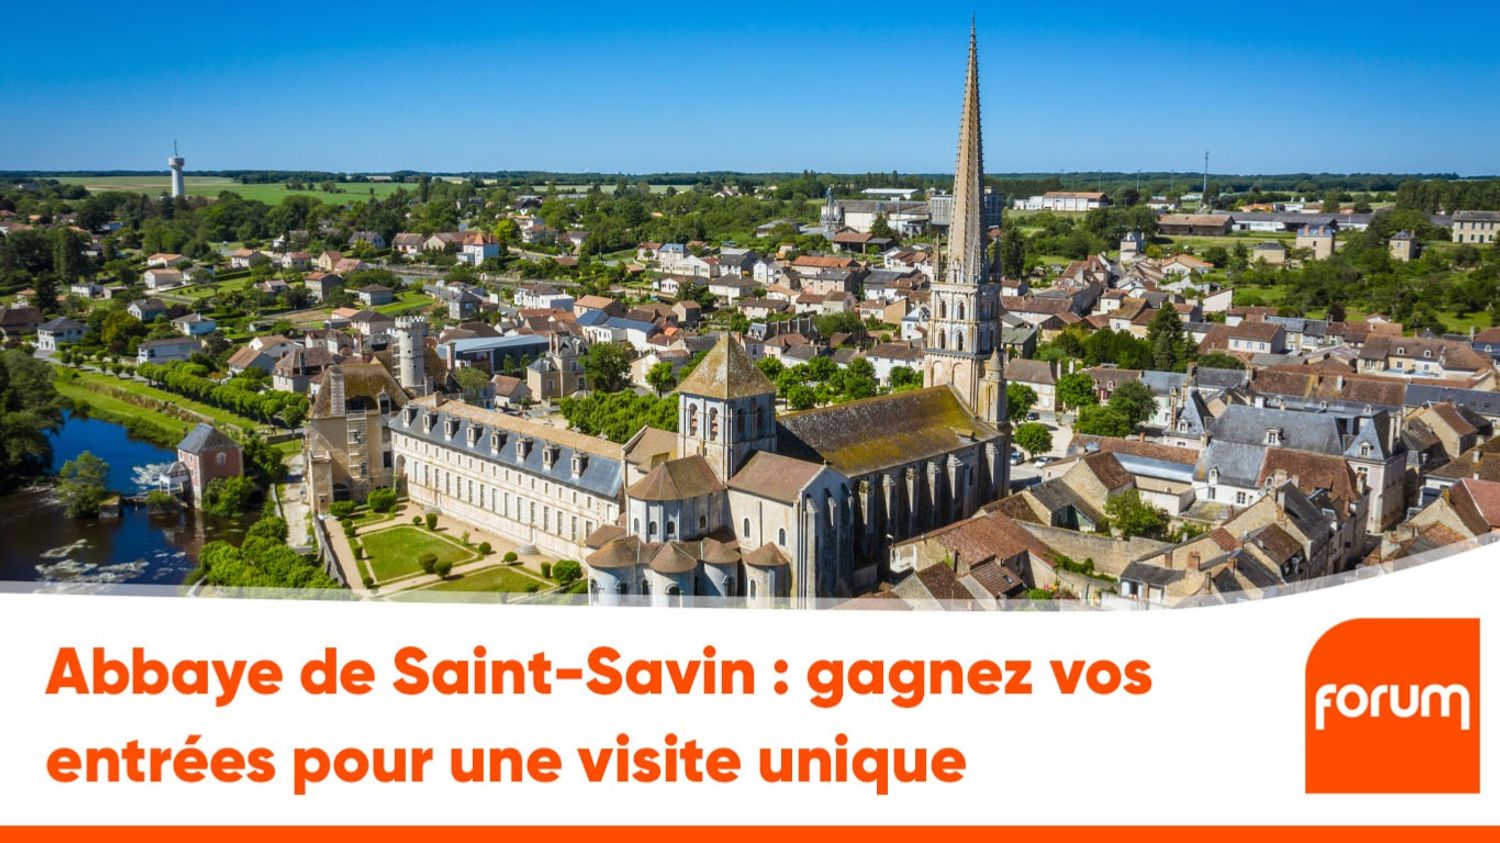 Abbaye de Saint-Savin : gagnez vos entrées pour une visite unique